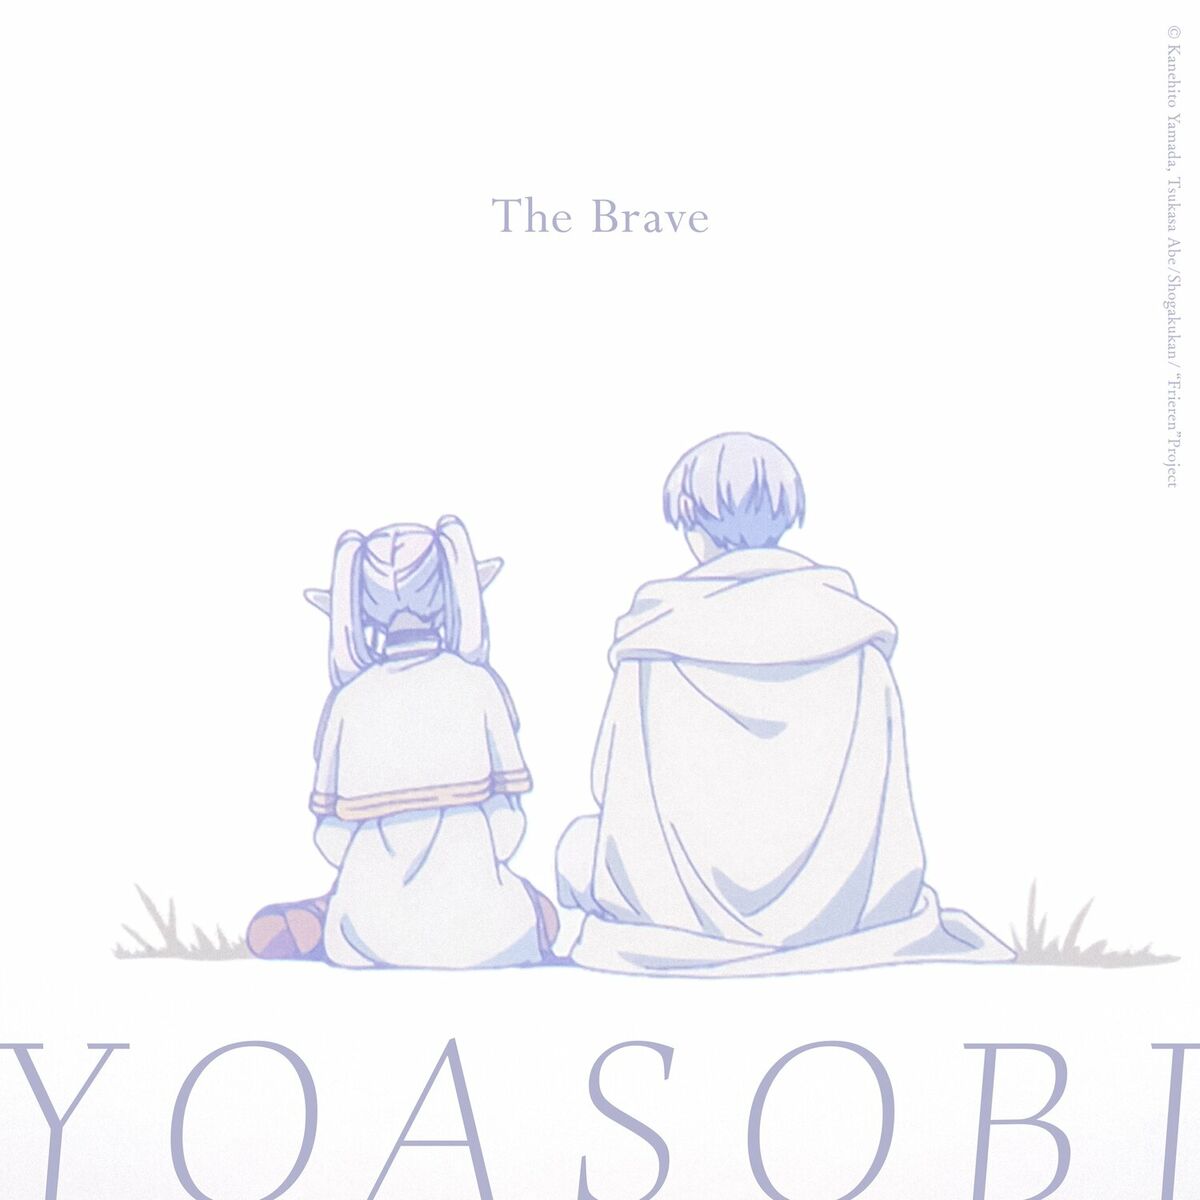 YOASOBI - THE BOOK 3: lyrics and songs | Deezer